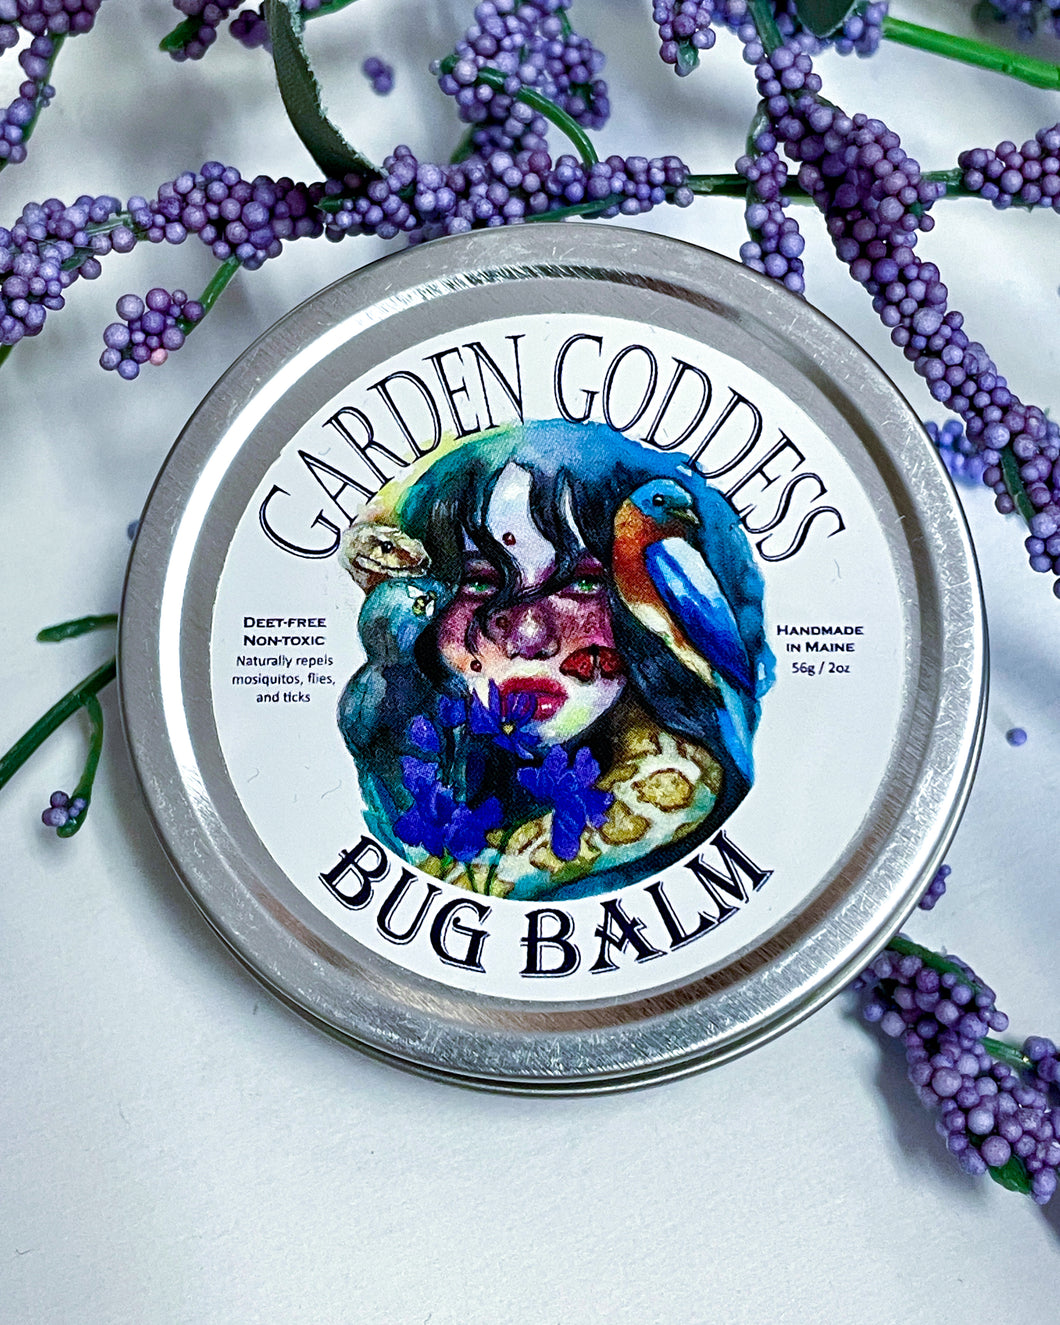 Garden Goddess Bug Balm